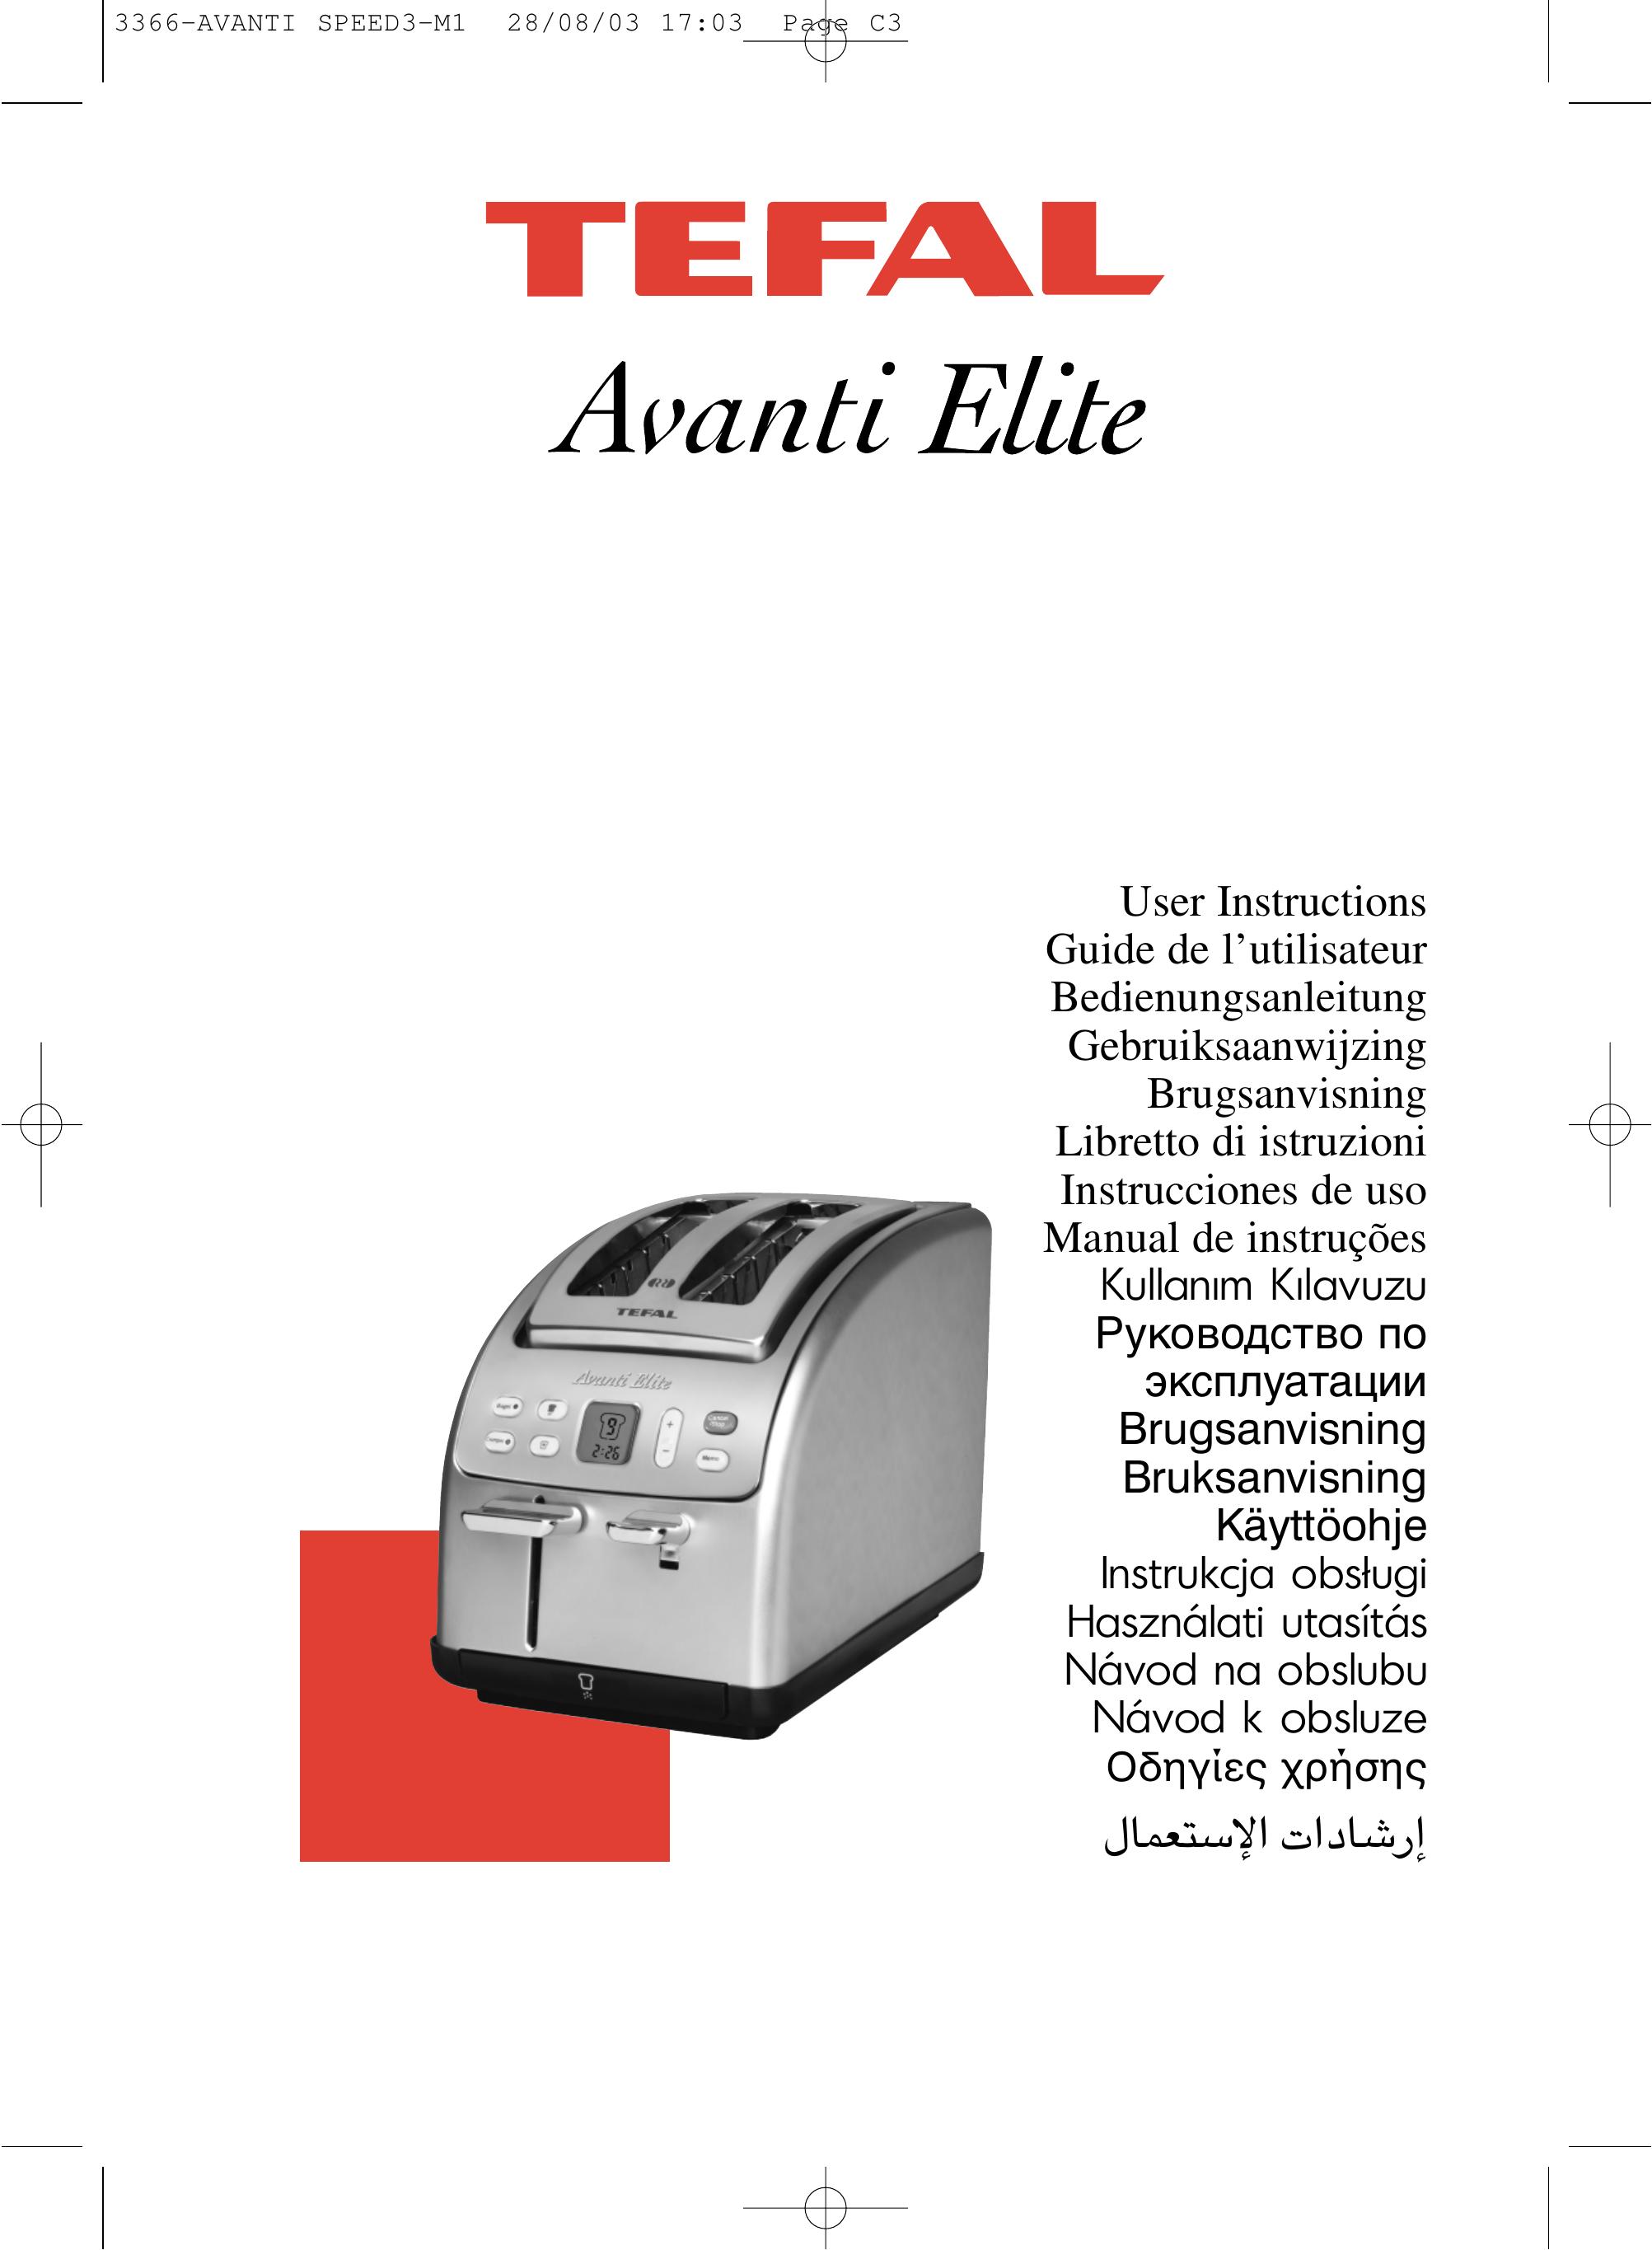 Groupe SEB USA - T-FAL Avanti Elite Toaster User Manual